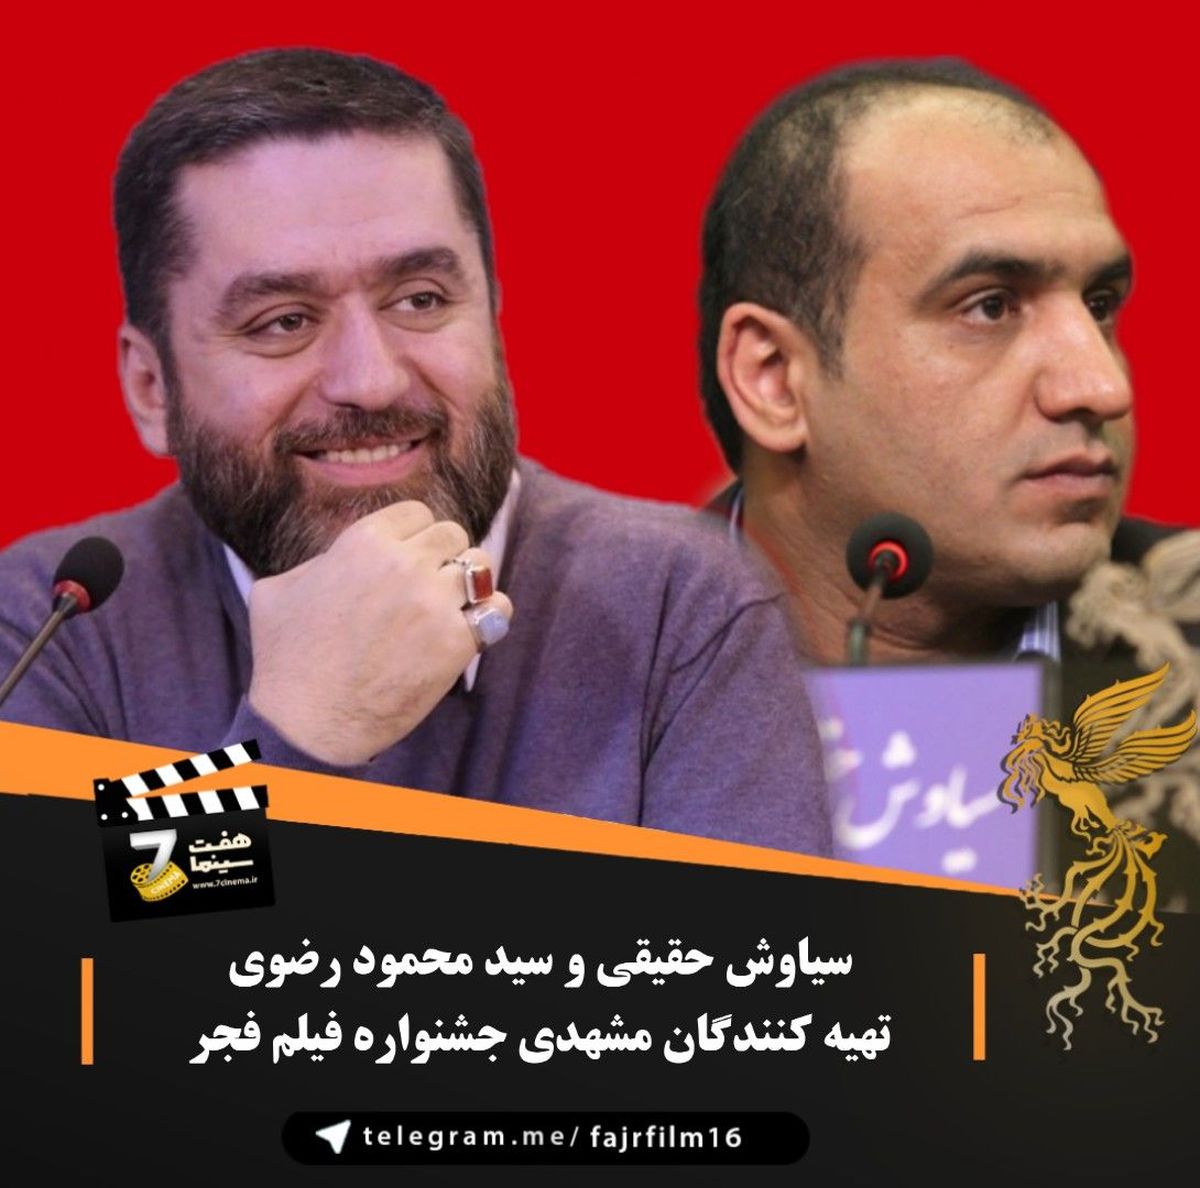 تهیه کنندگان مشهدی حاضر در جشنواره فیلم فجر